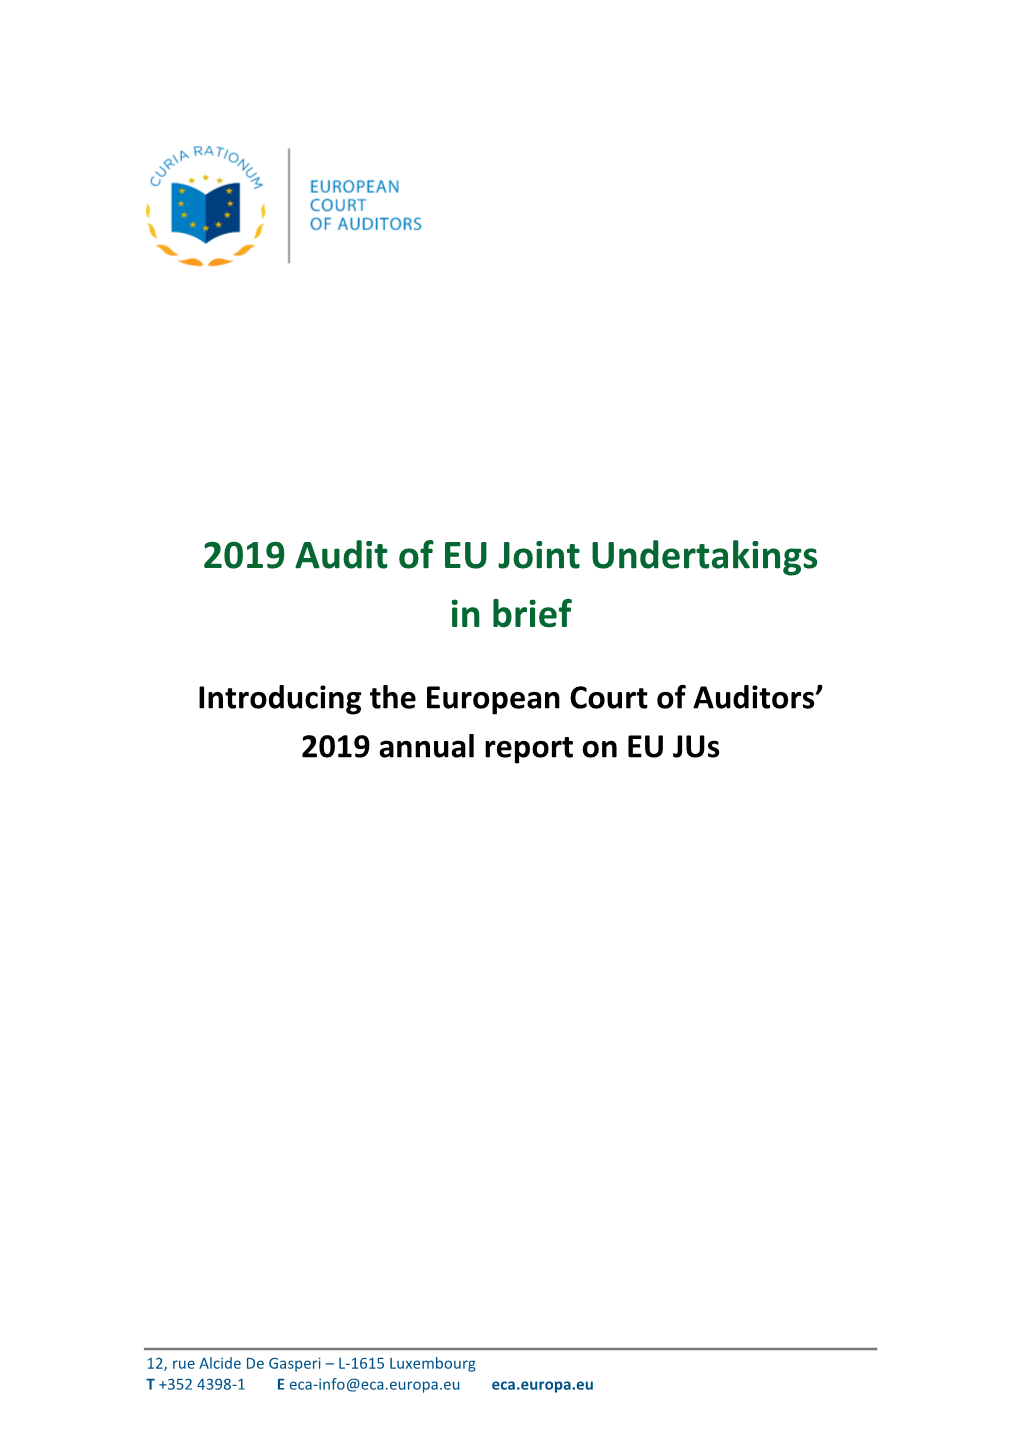 2019 Audit of EU Joint Undertakings in Brief